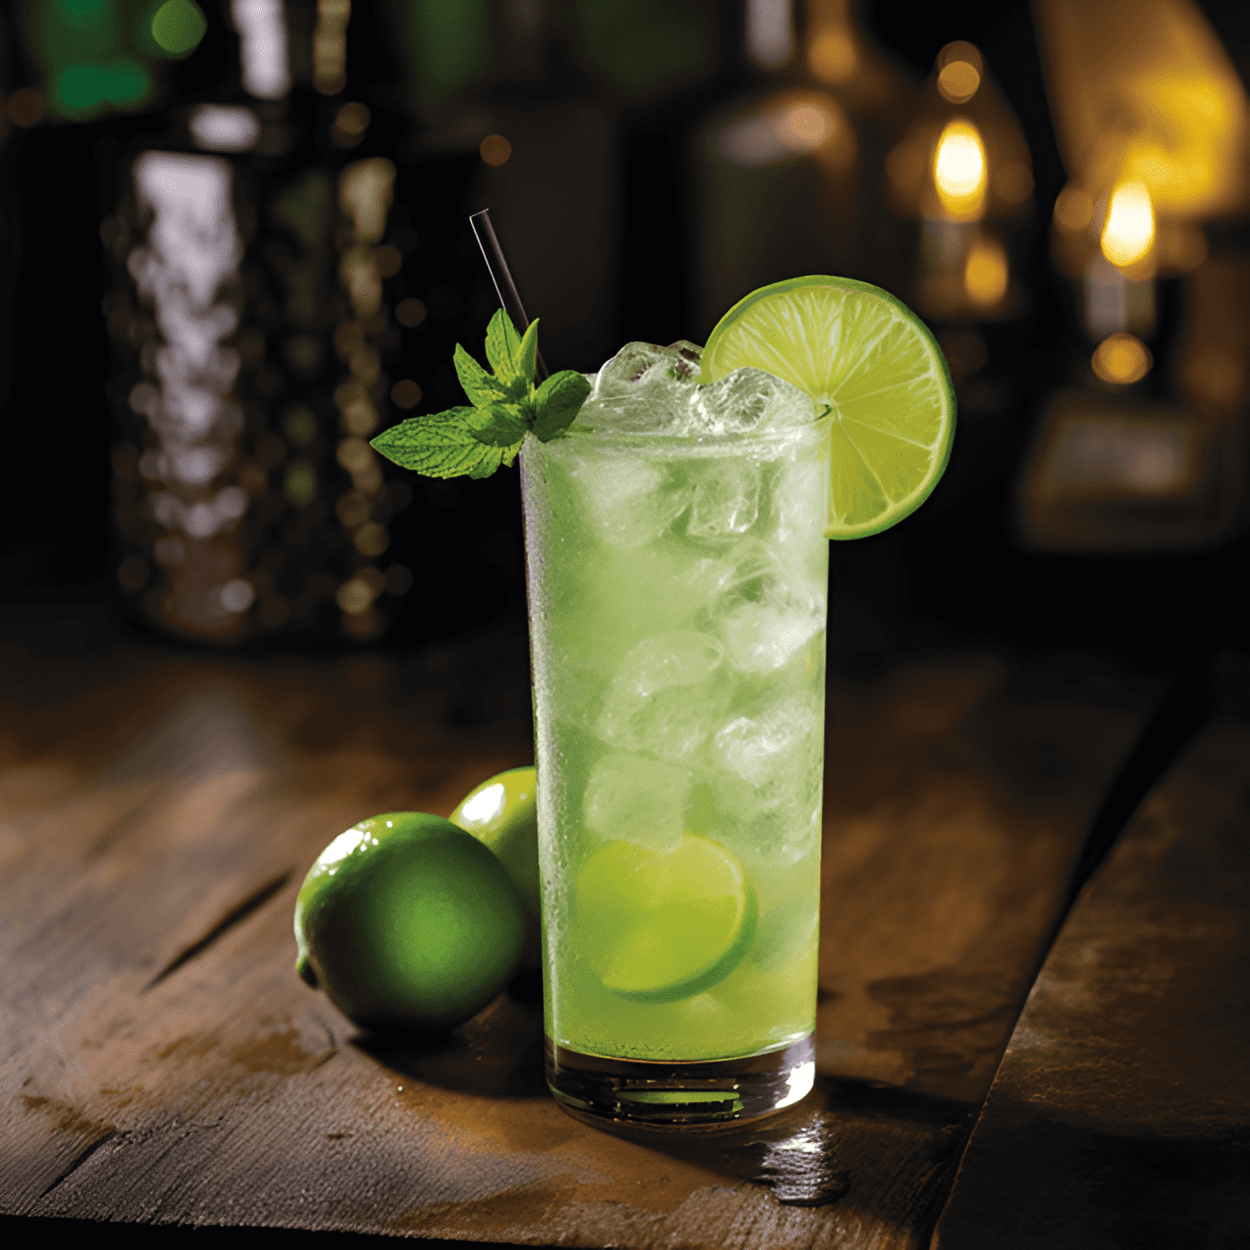 Lime Fizz Cóctel Receta - El cóctel Lime Fizz tiene un sabor ácido y fresco con un toque de dulzura. Es ligero, refrescante y efervescente, lo que lo convierte en una bebida perfecta para el verano.